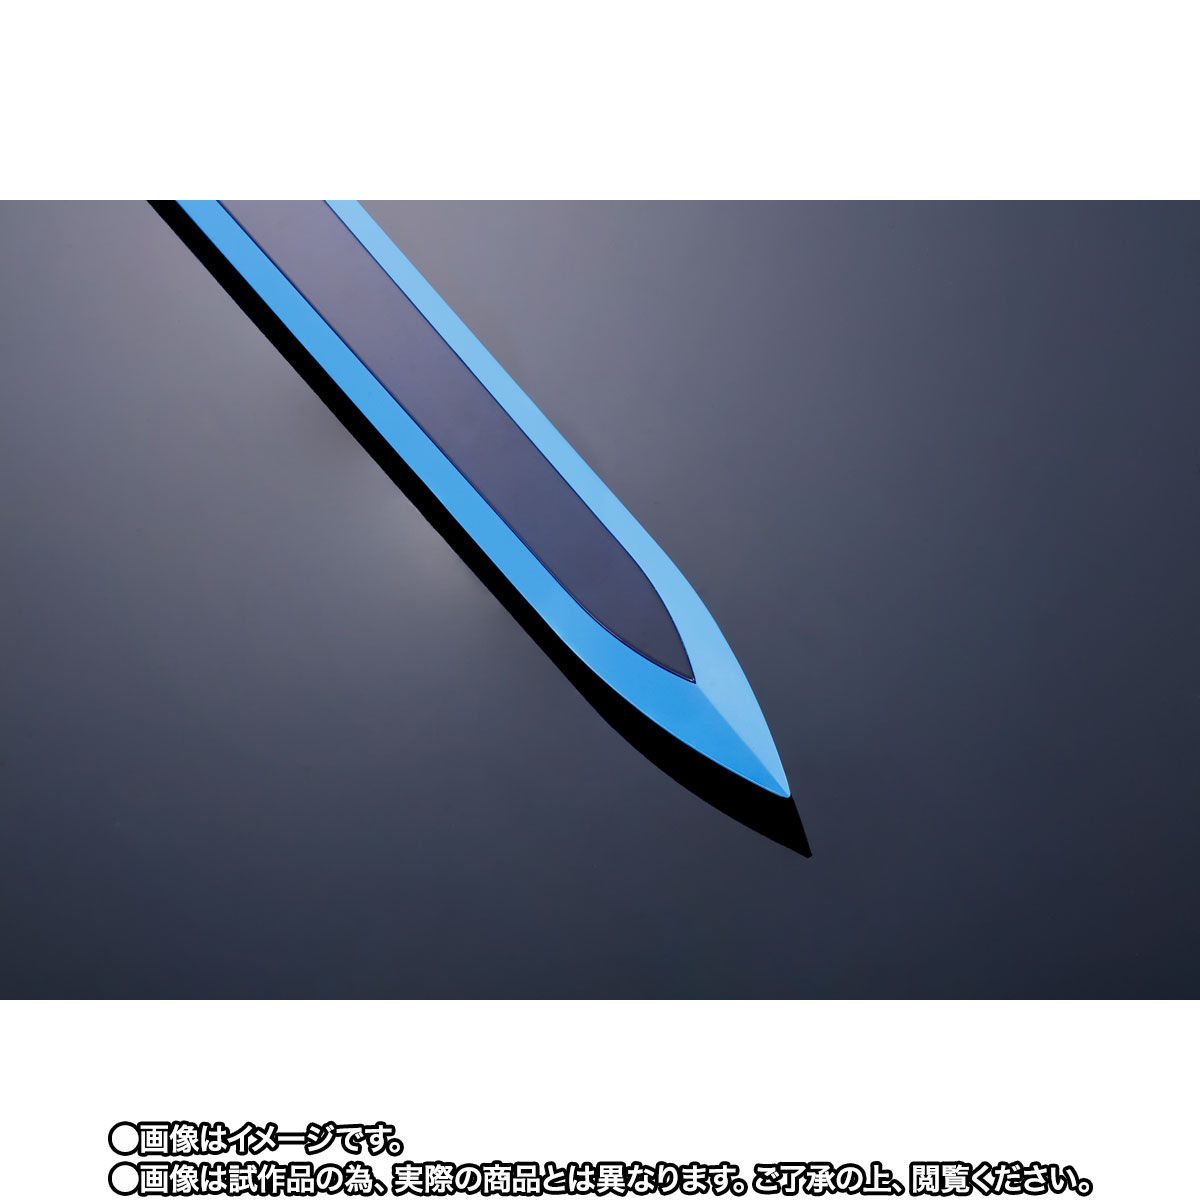 【限定販売】PROPLICA 『夜空の剣』ソードアート・オンライン 変身なりきり-007